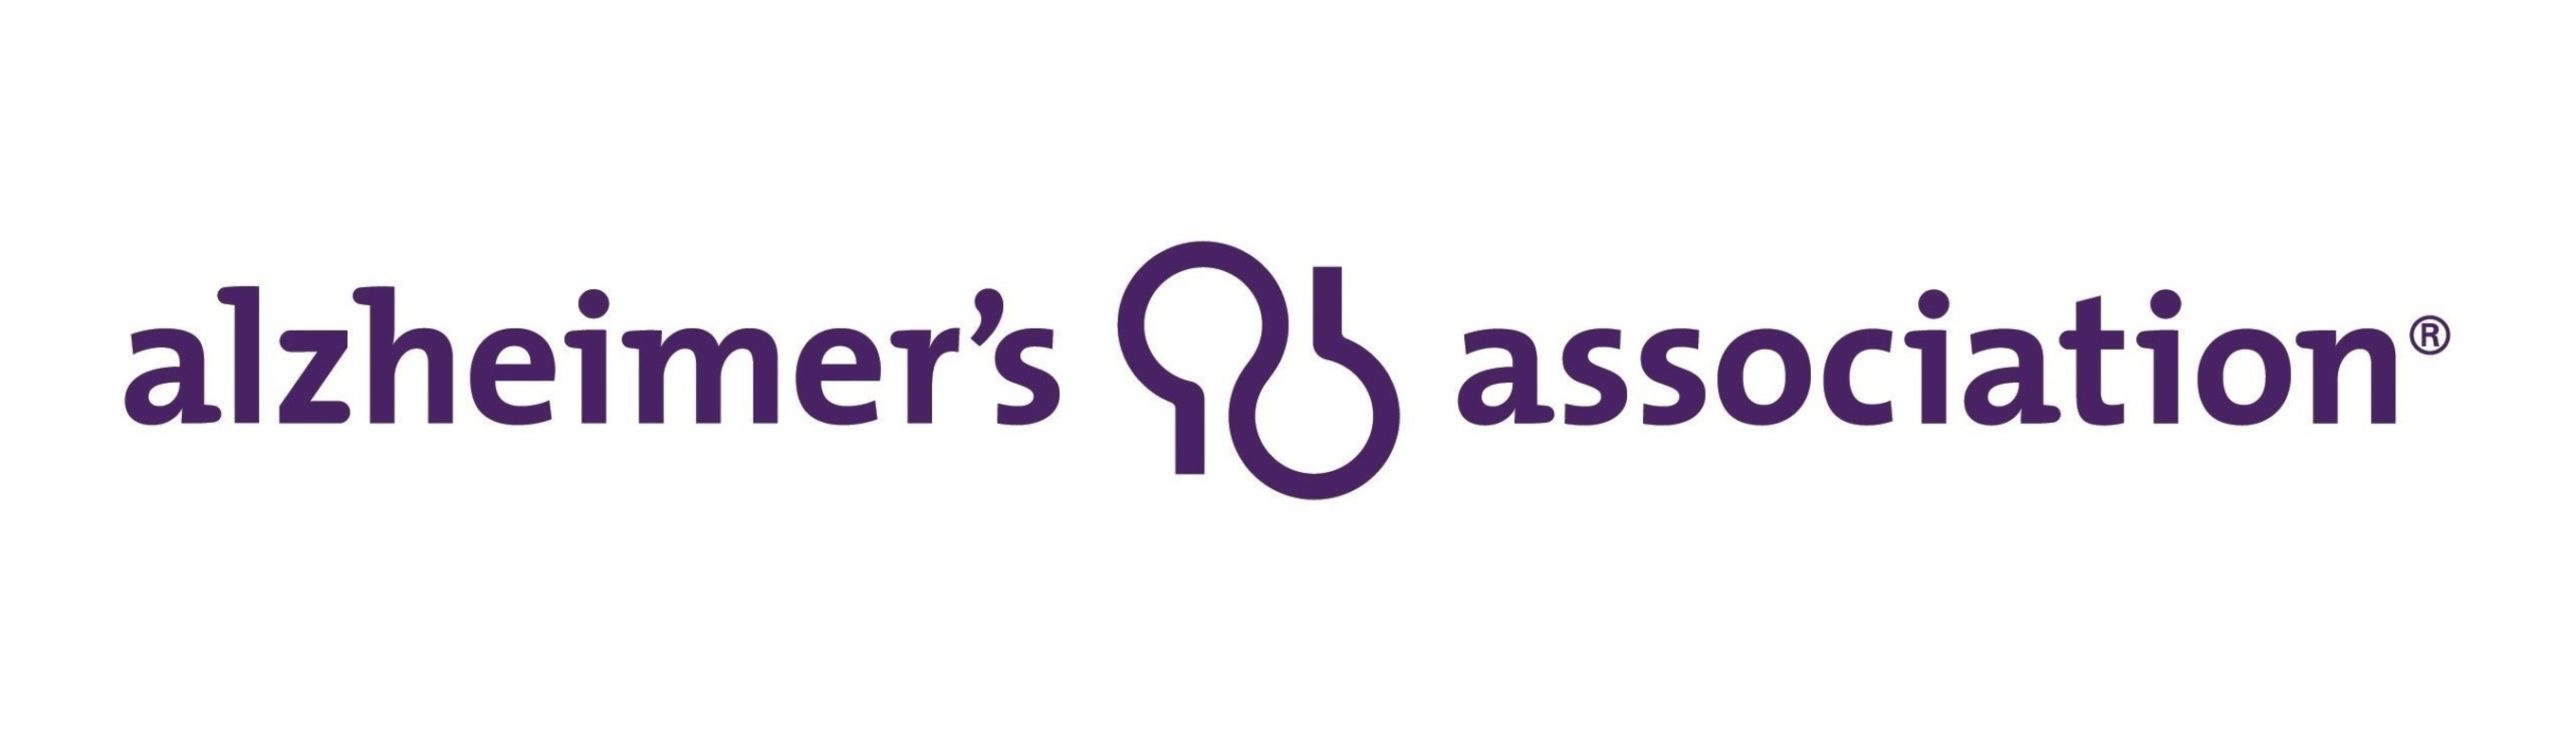 External Link to Alzheimers Association Website